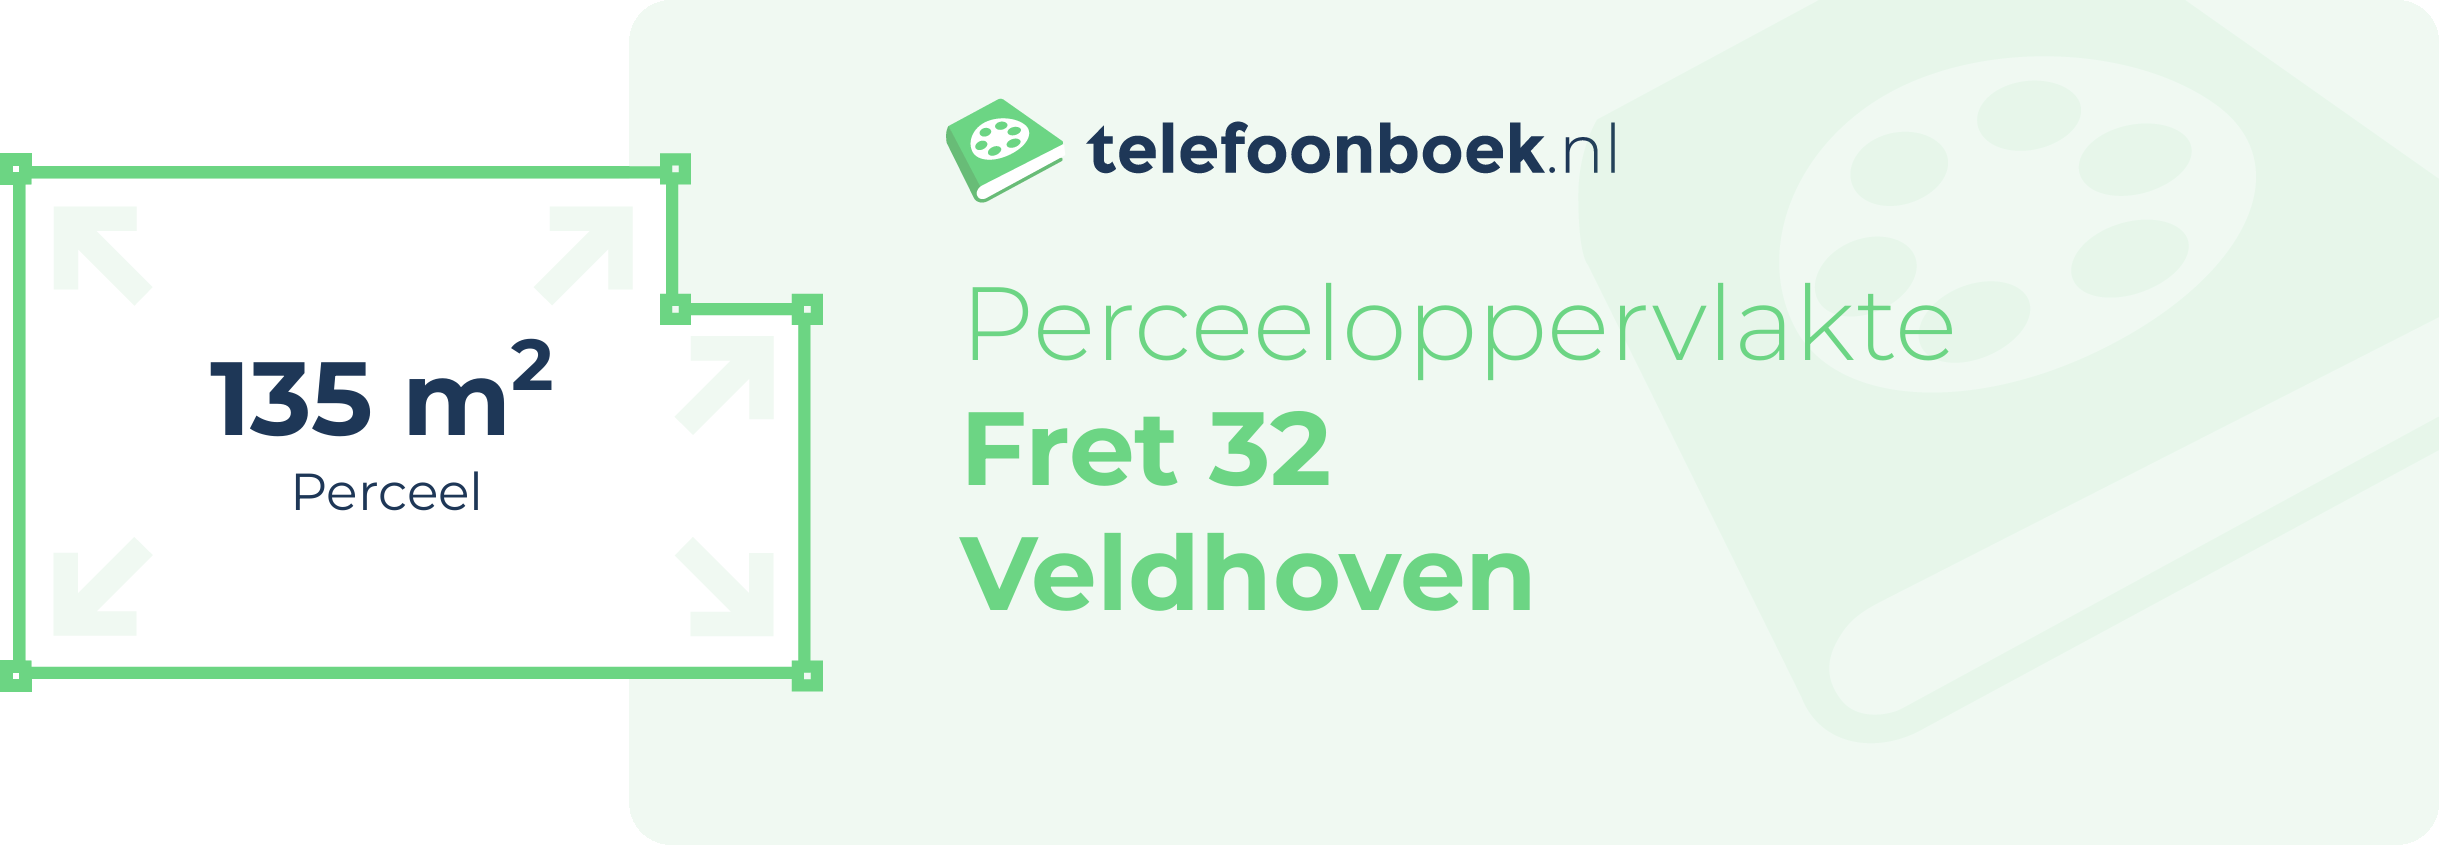 Perceeloppervlakte Fret 32 Veldhoven